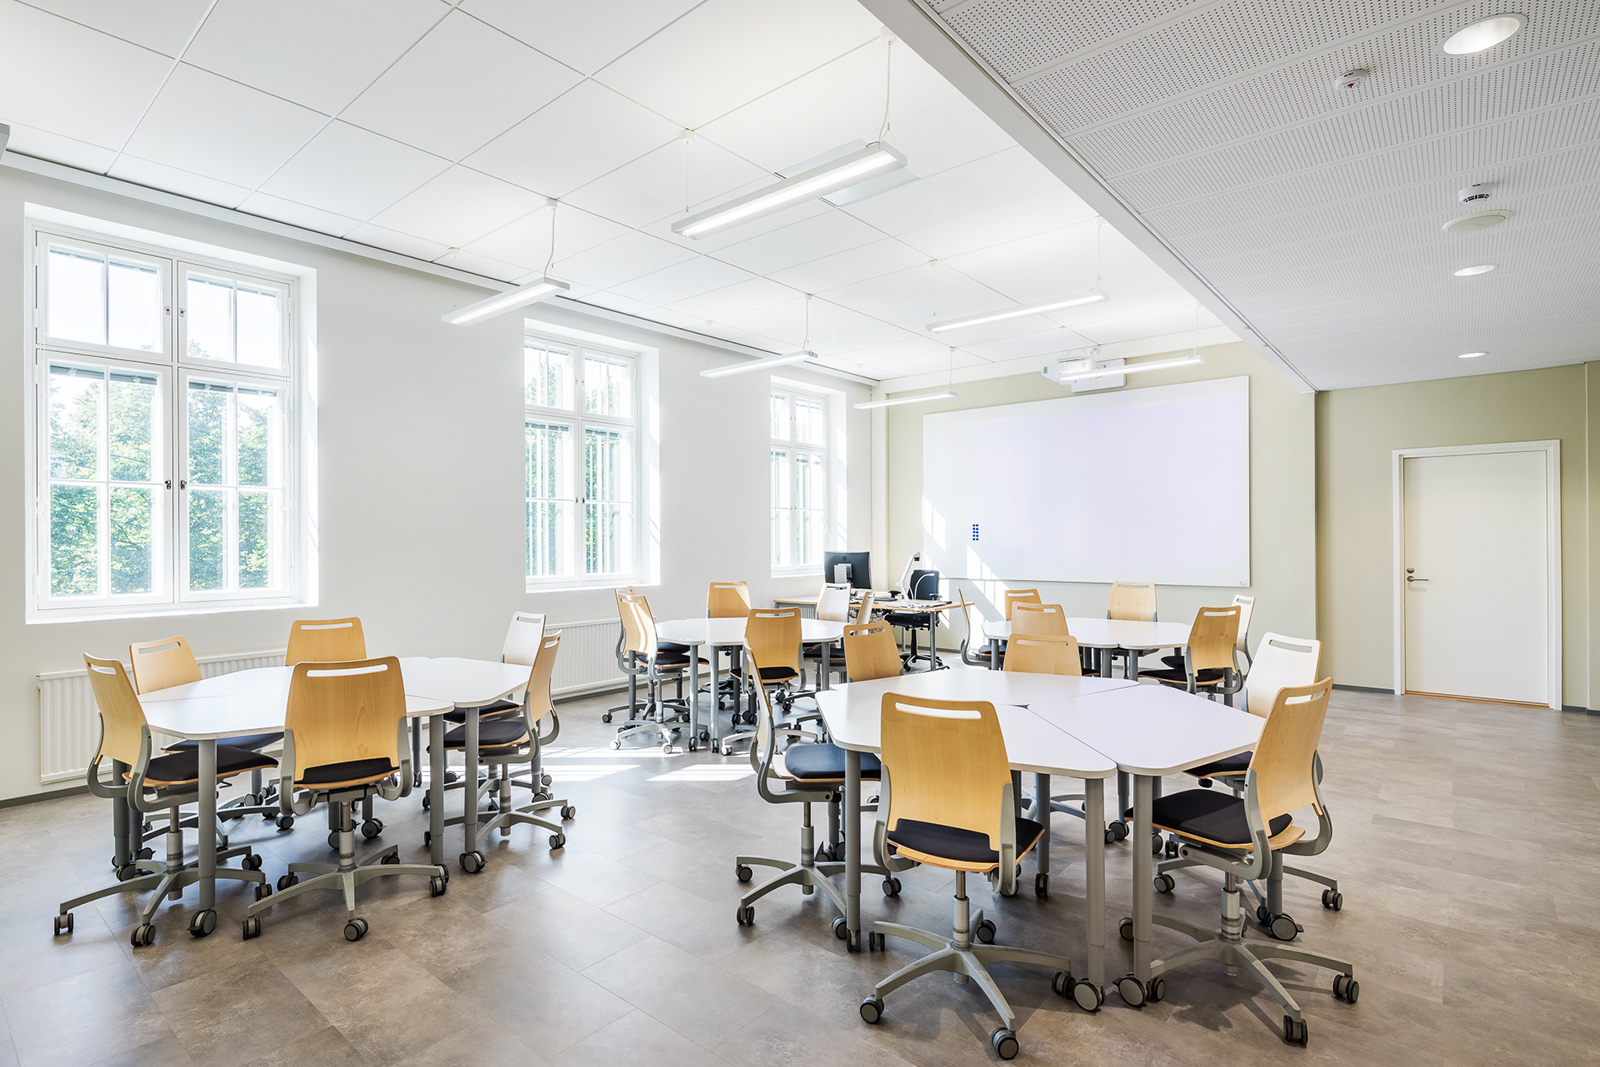 Avara ja valoisa Runeberginkadun ryhmätyötila. Tilassa kolme erillistä pöytäryhmää pyöreässä muodossa. Takana näkyy opettajan pöytä ja whiteboard. Vasemmalta puolelta isot ikkunat tuovat aurinkoa ja valoa luokkaan.